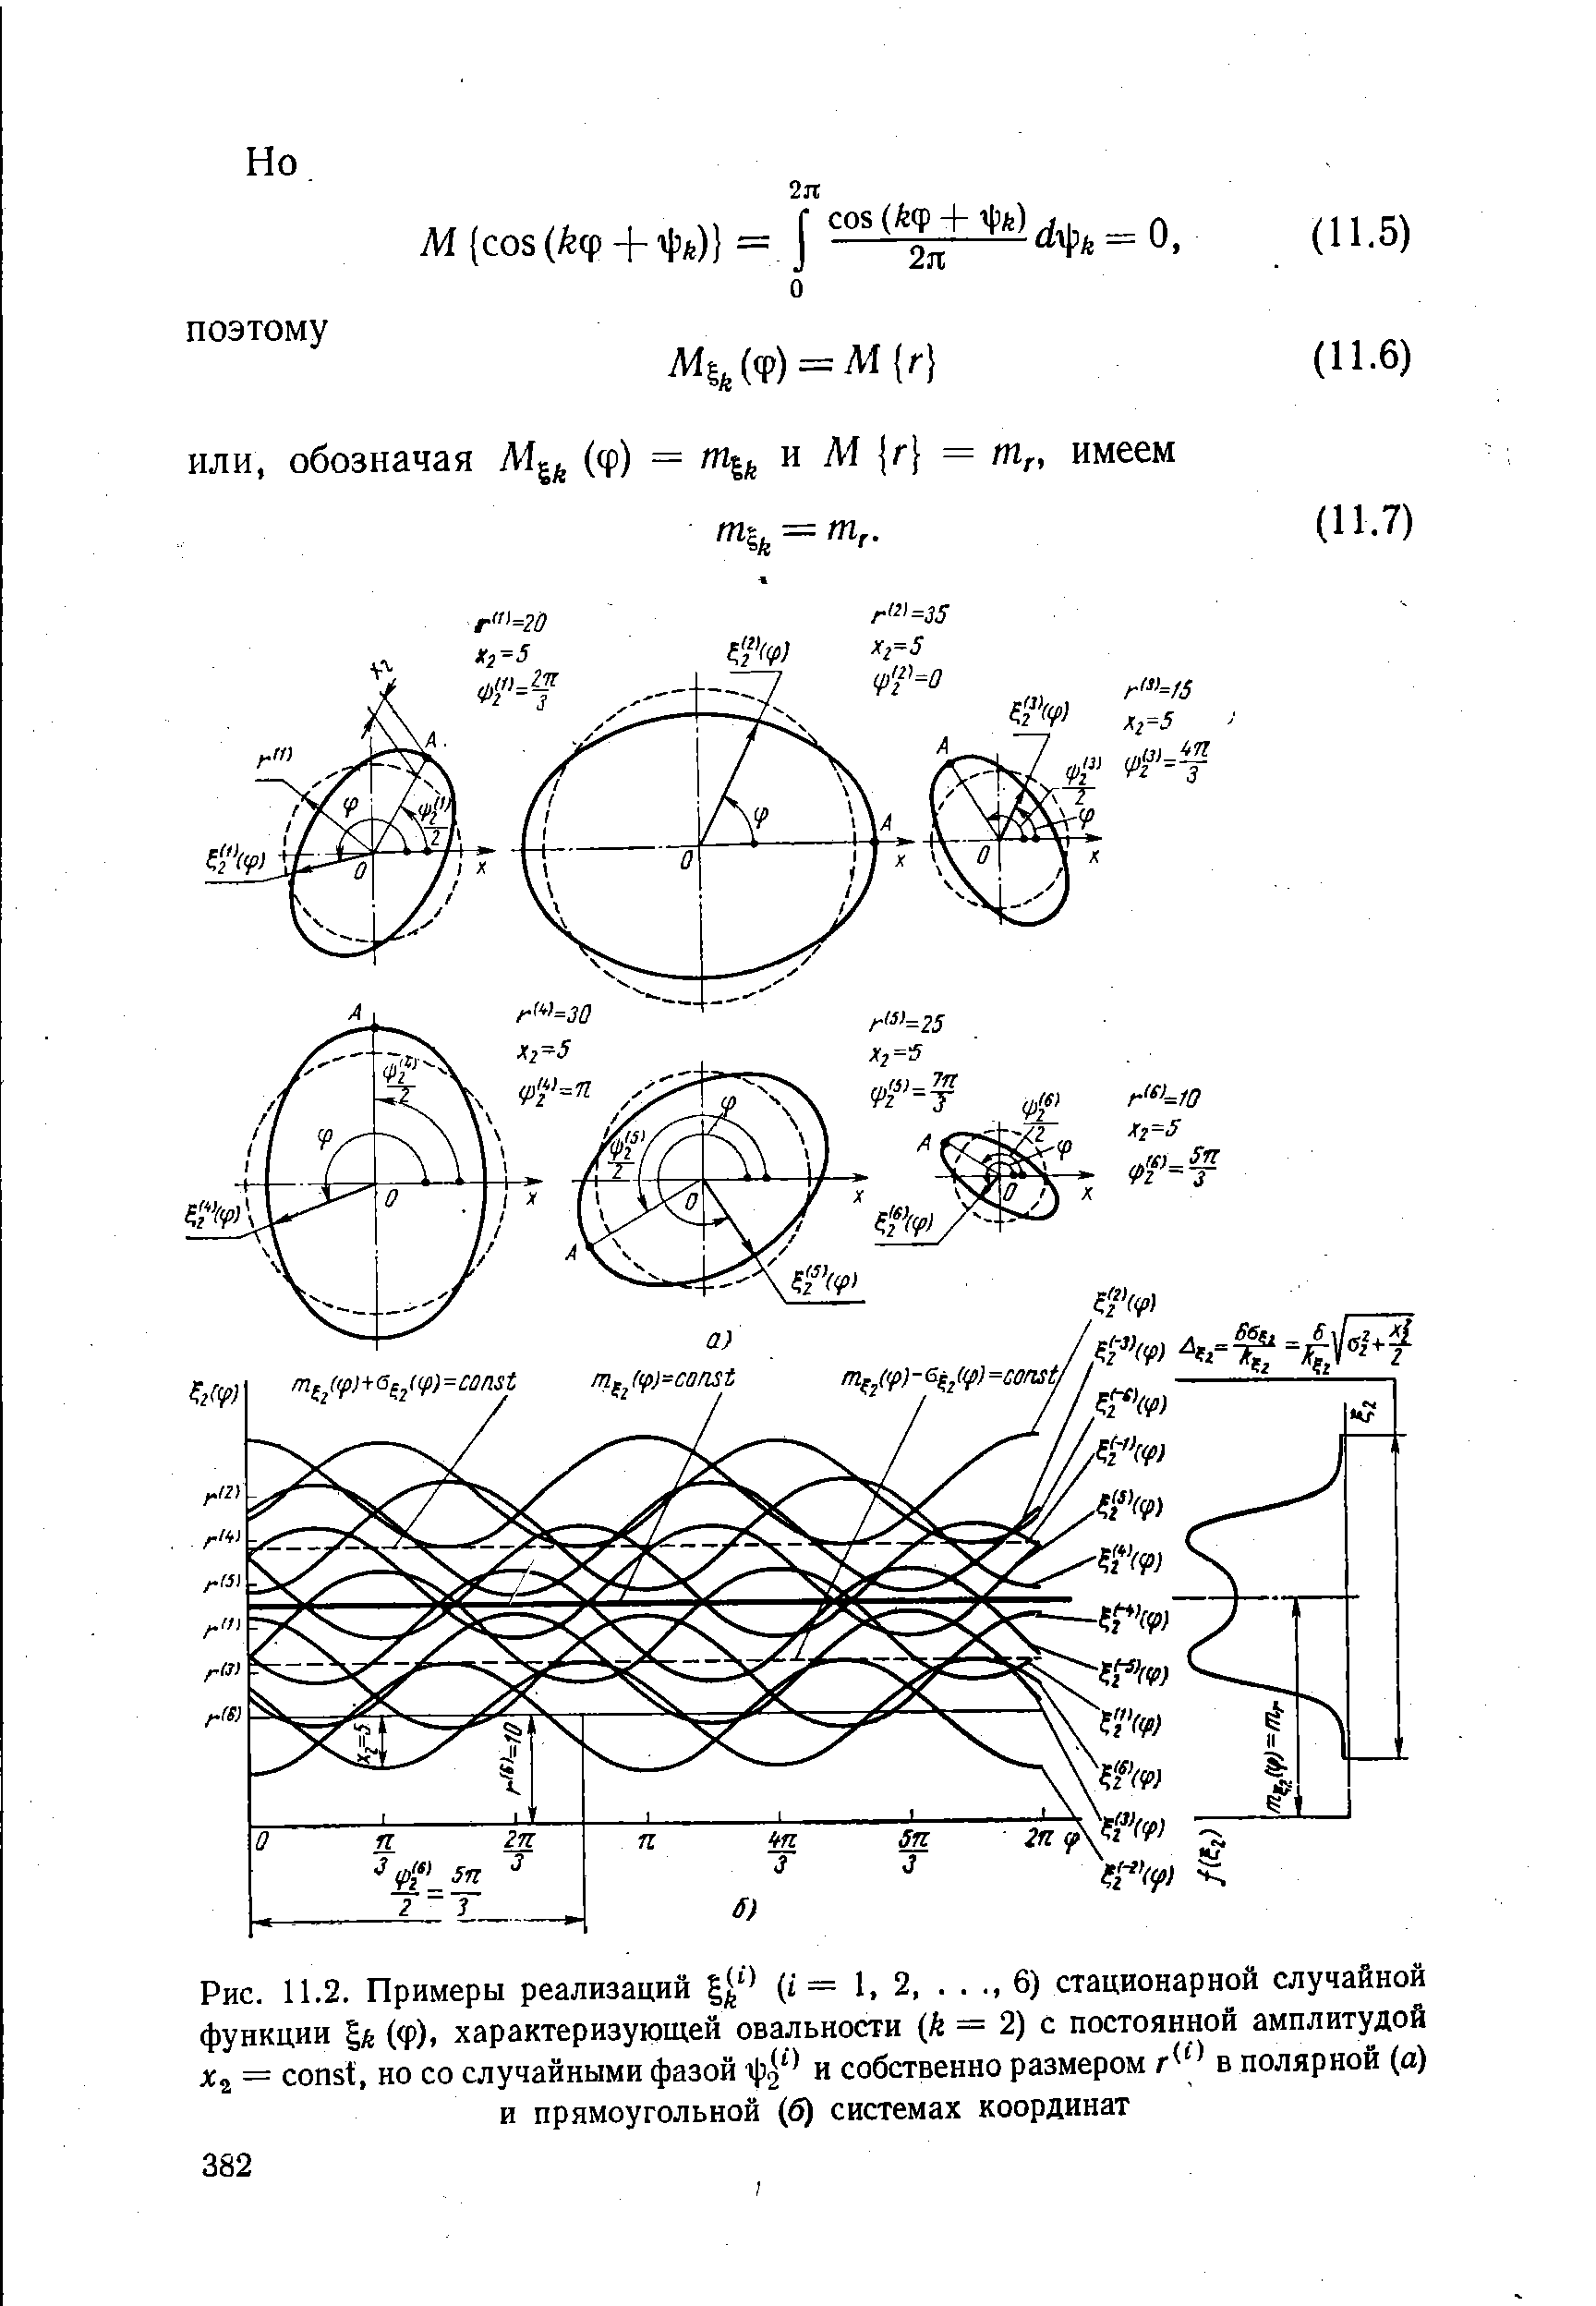 Рис. 11.2. Примеры реализаций (i = 1, 2,. . , , 6) стационарной случайной функции %k (ф). характеризующей овальности (й = 2) с постоянной амплитудой 2 = onst, но со случайными фазой и собственно размером r в полярной (а) и прямоугольной (б) системах координат
